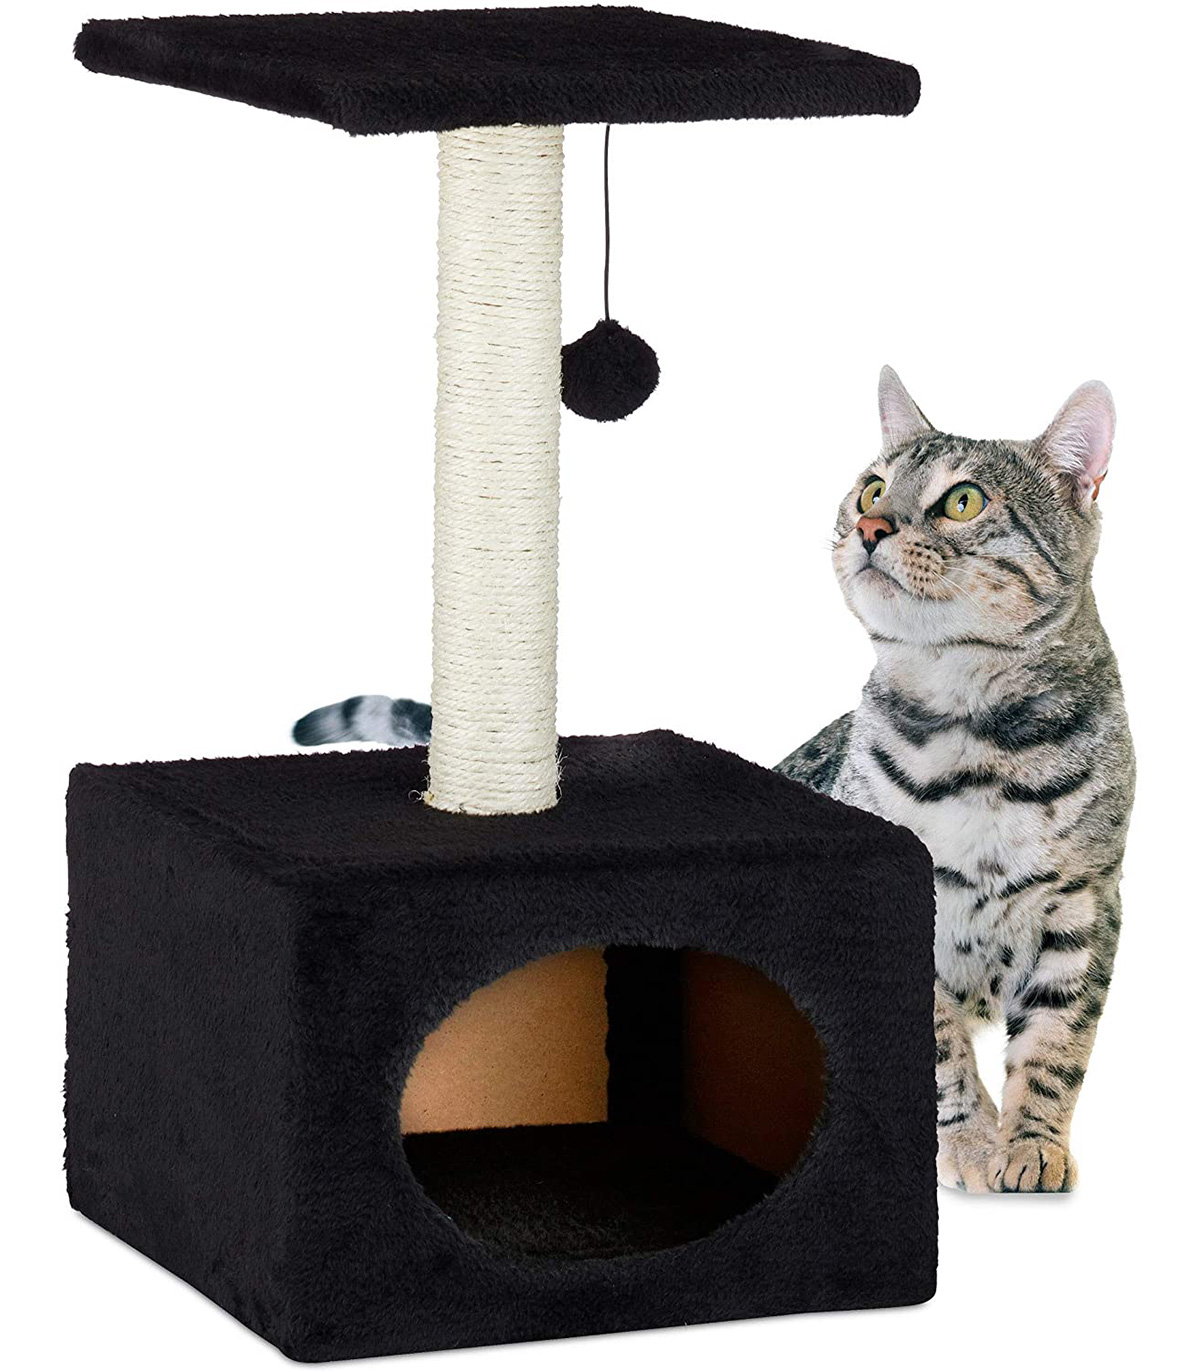 Stalp de zgariat pentru pisici, cu minge de joc si capac de plus, Negru, 31 x 31 x 56 cm Ansambluri pret redus imagine 2022 2